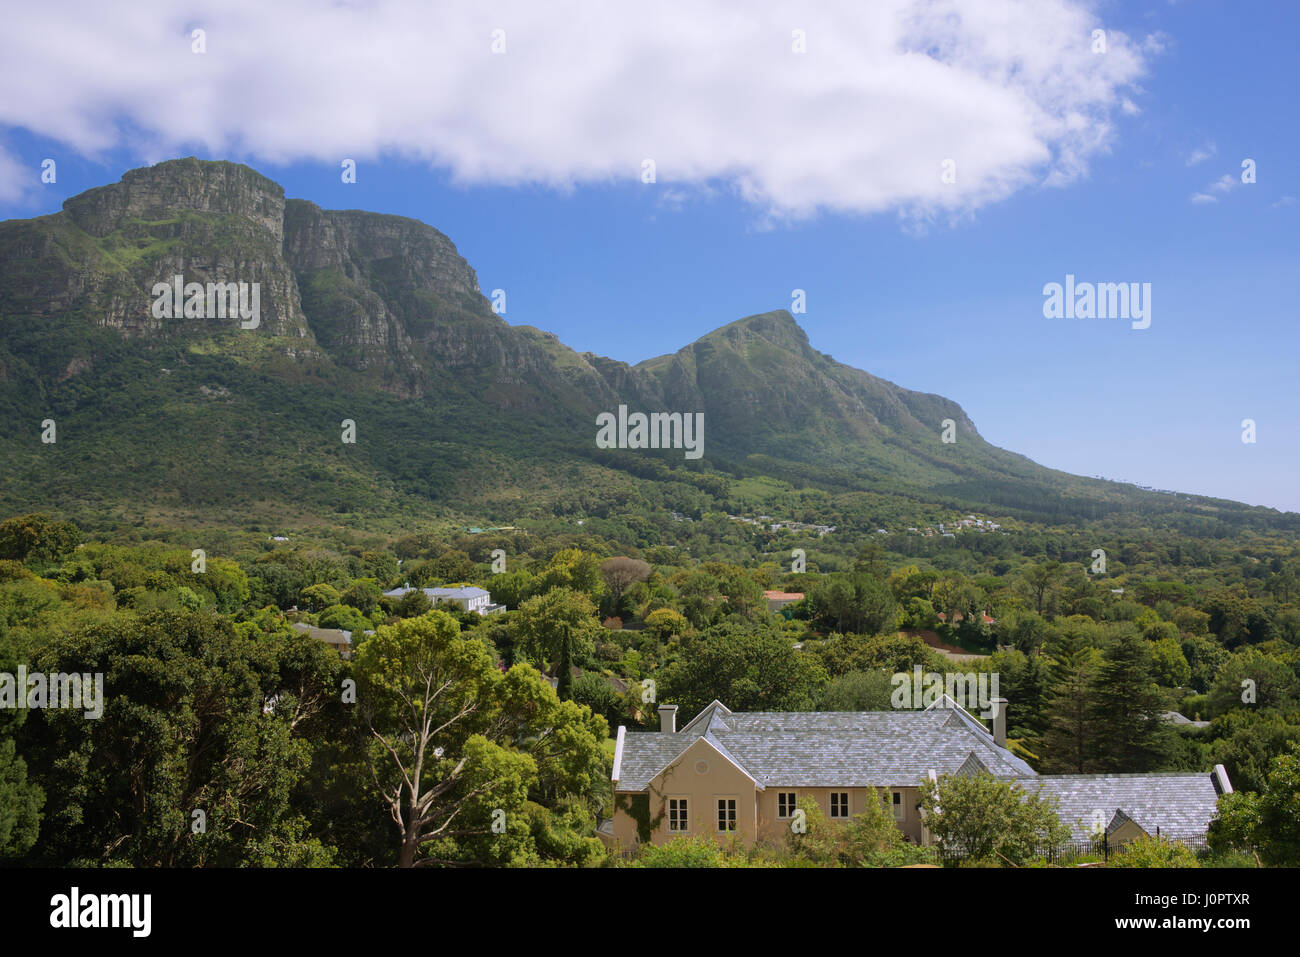 La montagne de la table vue de Constantia Cape Town Afrique du Sud Banque D'Images